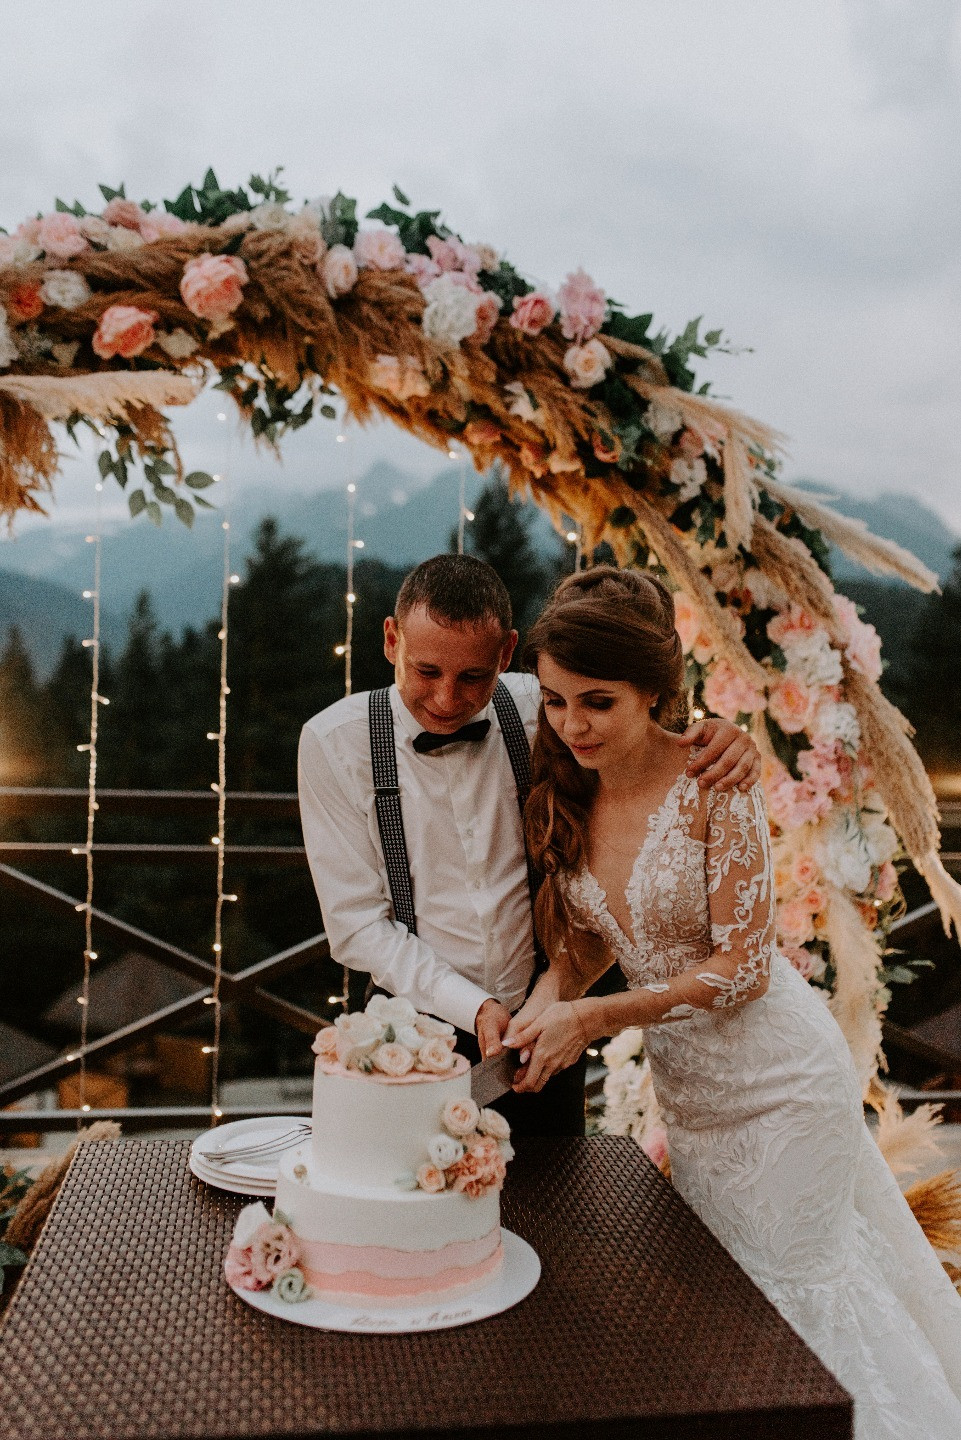 ФОТО ИЗ СТАТЬИ: Романтичная свадьба в горах Архыза